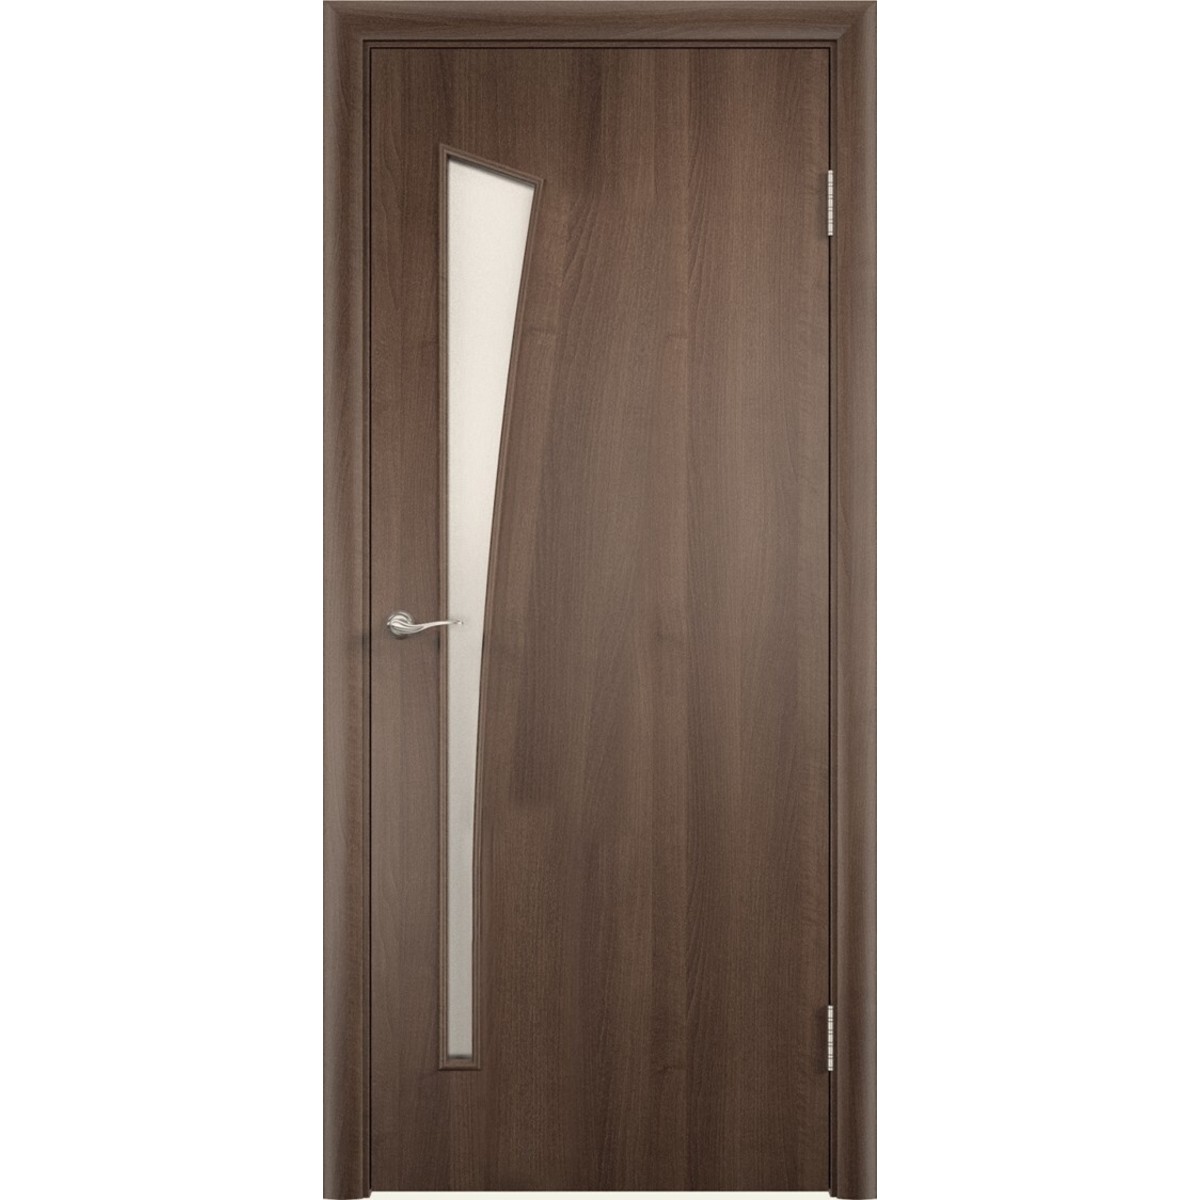 Дверь межкомнатная остеклённая без замка и петель в комплекте Белеза 70x200 см ламинация цвет дуб тёрнер коричневый